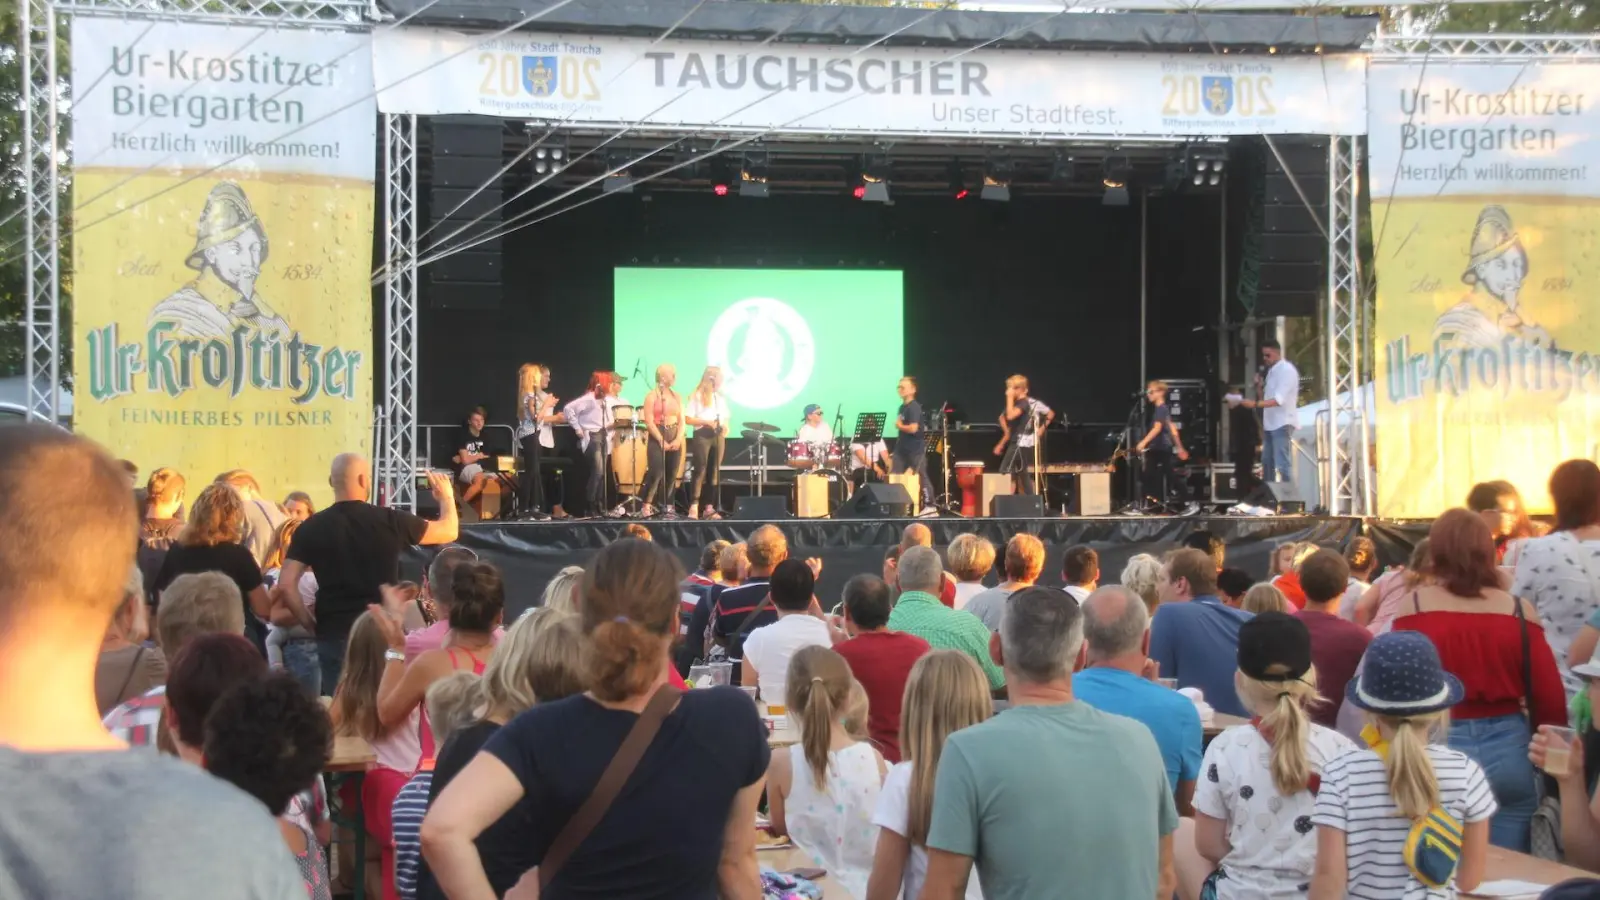 2020+1: Taucha verschiebt Veranstaltungen im Doppel-Jubiläumsjahr auf nächstes Jahr (Foto: taucha-kompakt.de)